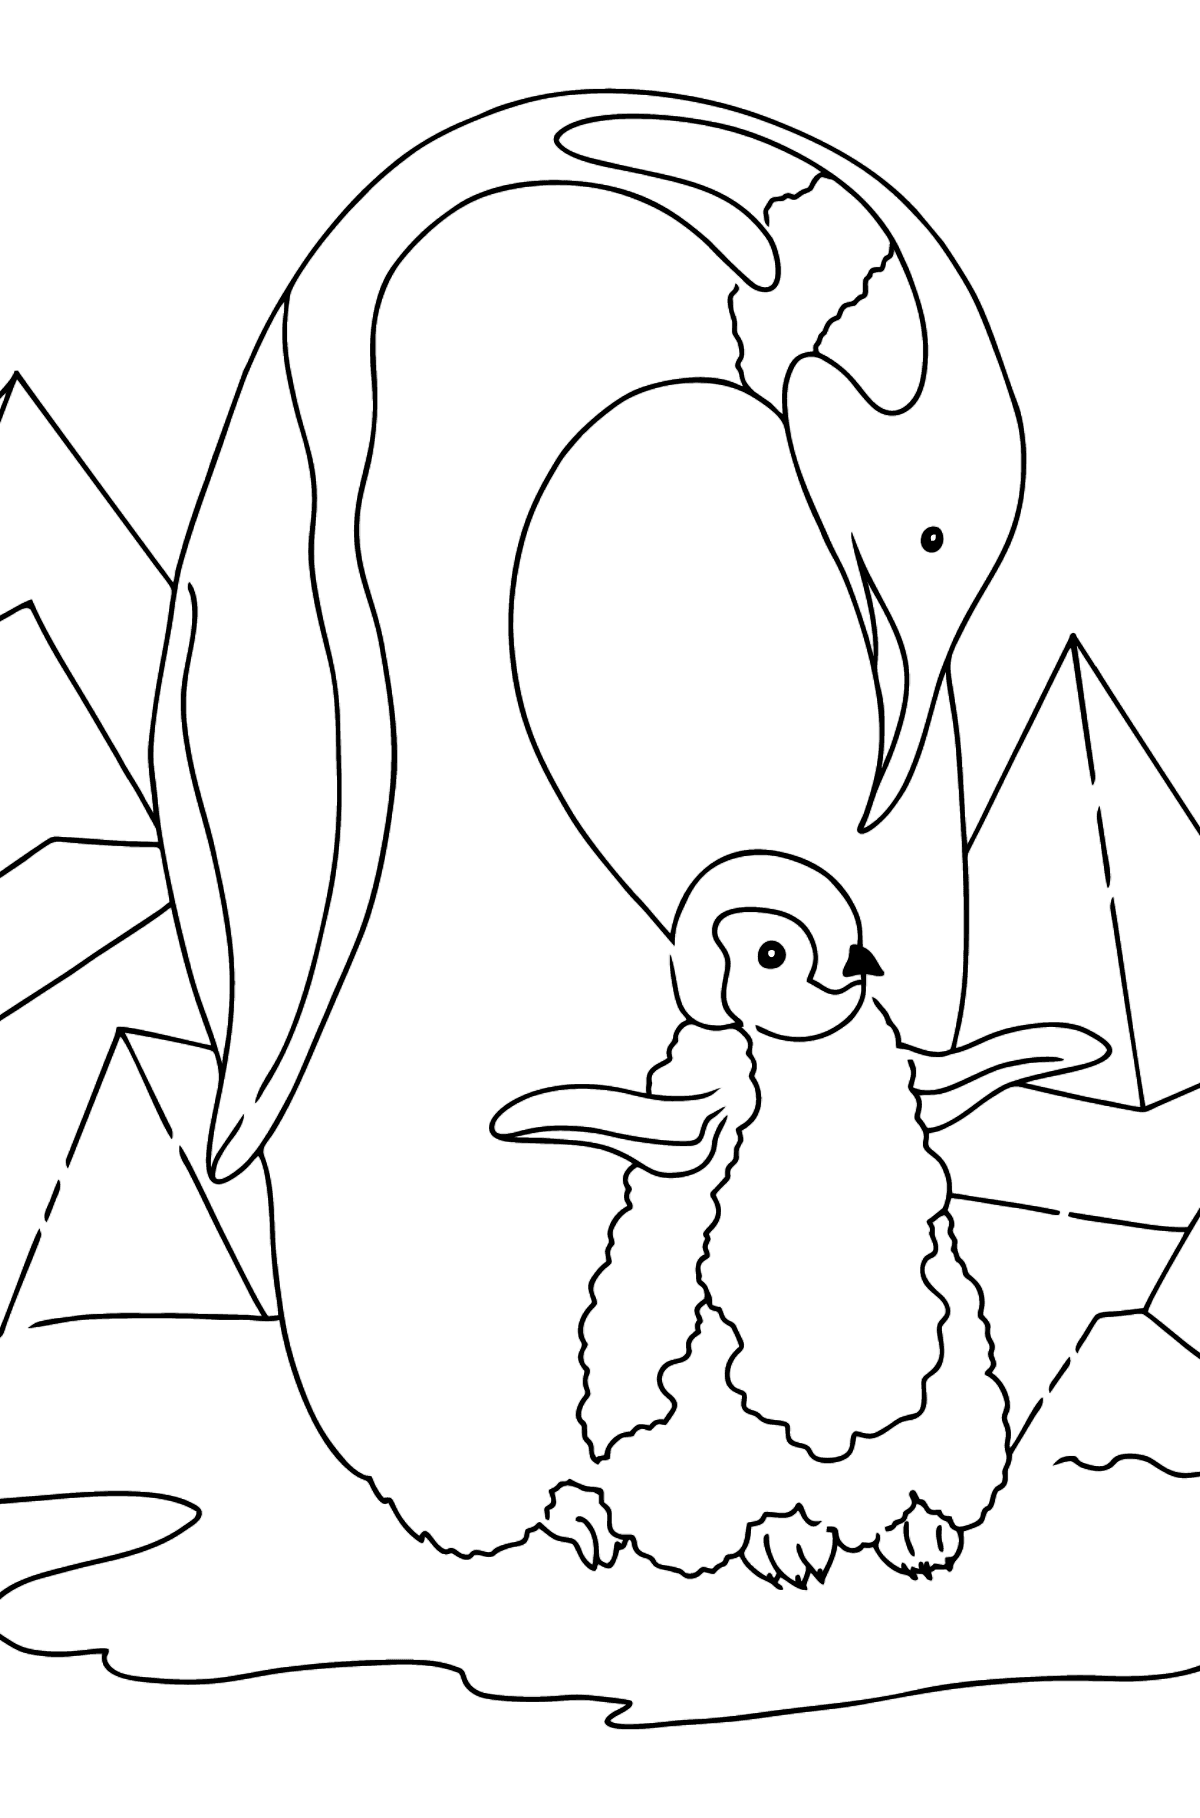 Dibujo para Colorear - Un Pingüino Cariñoso - Dibujos para Colorear para Niños